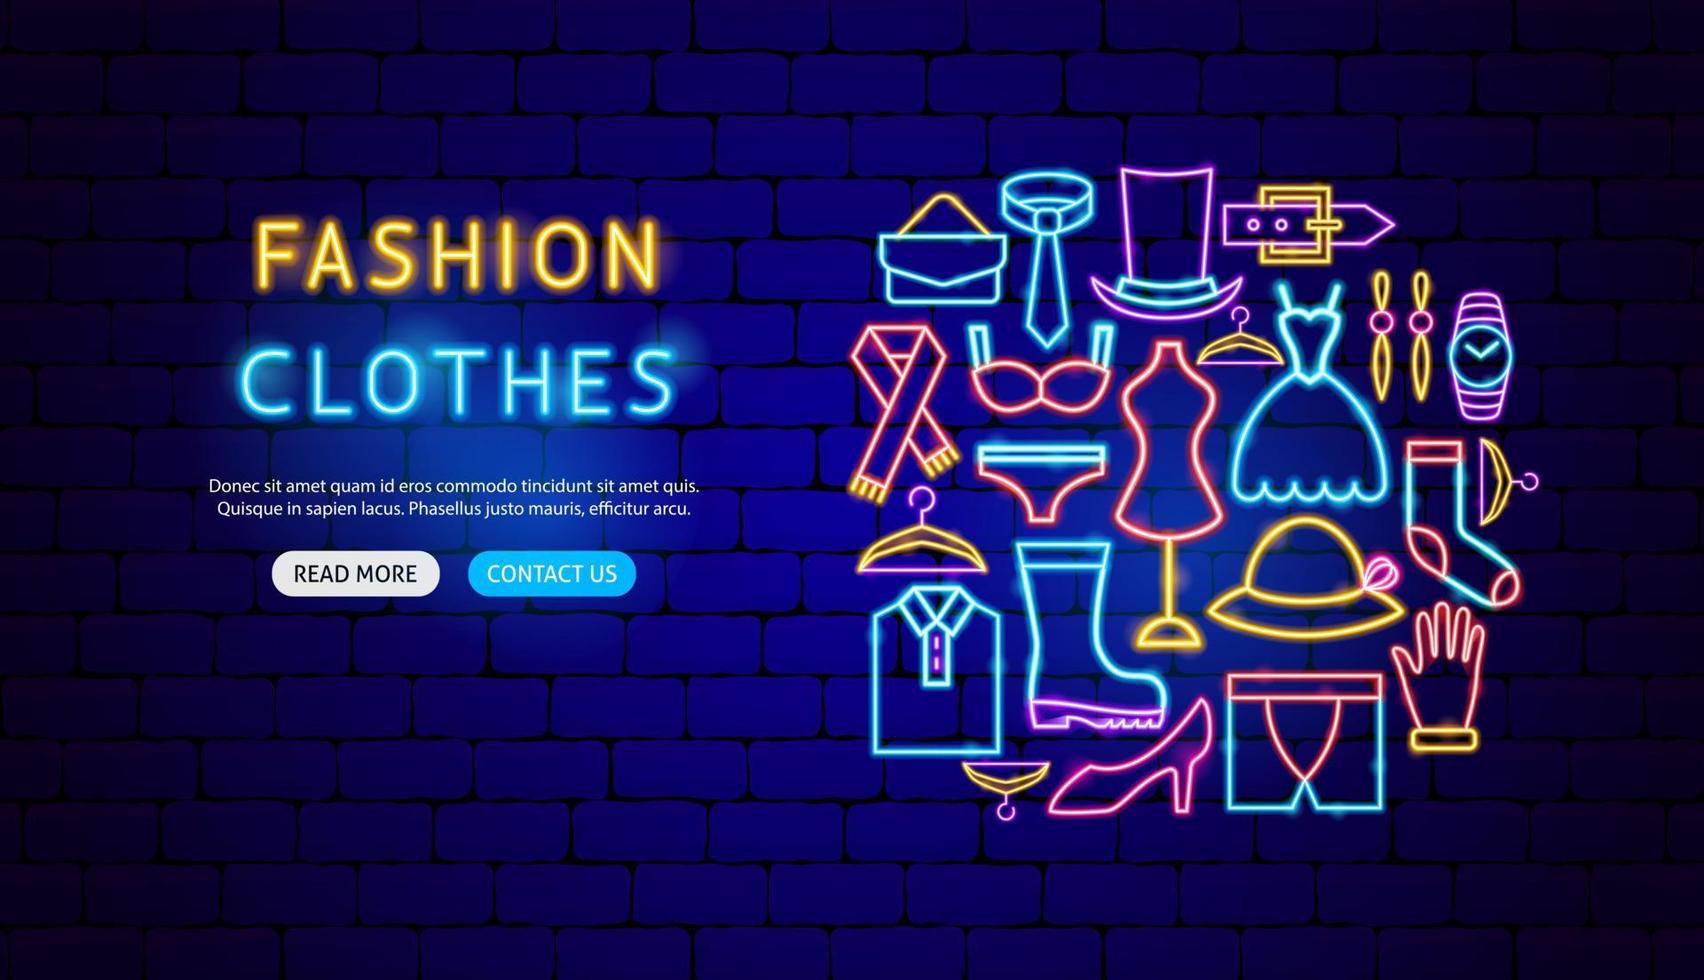 Fashion Clothes Neon Banner Design vector